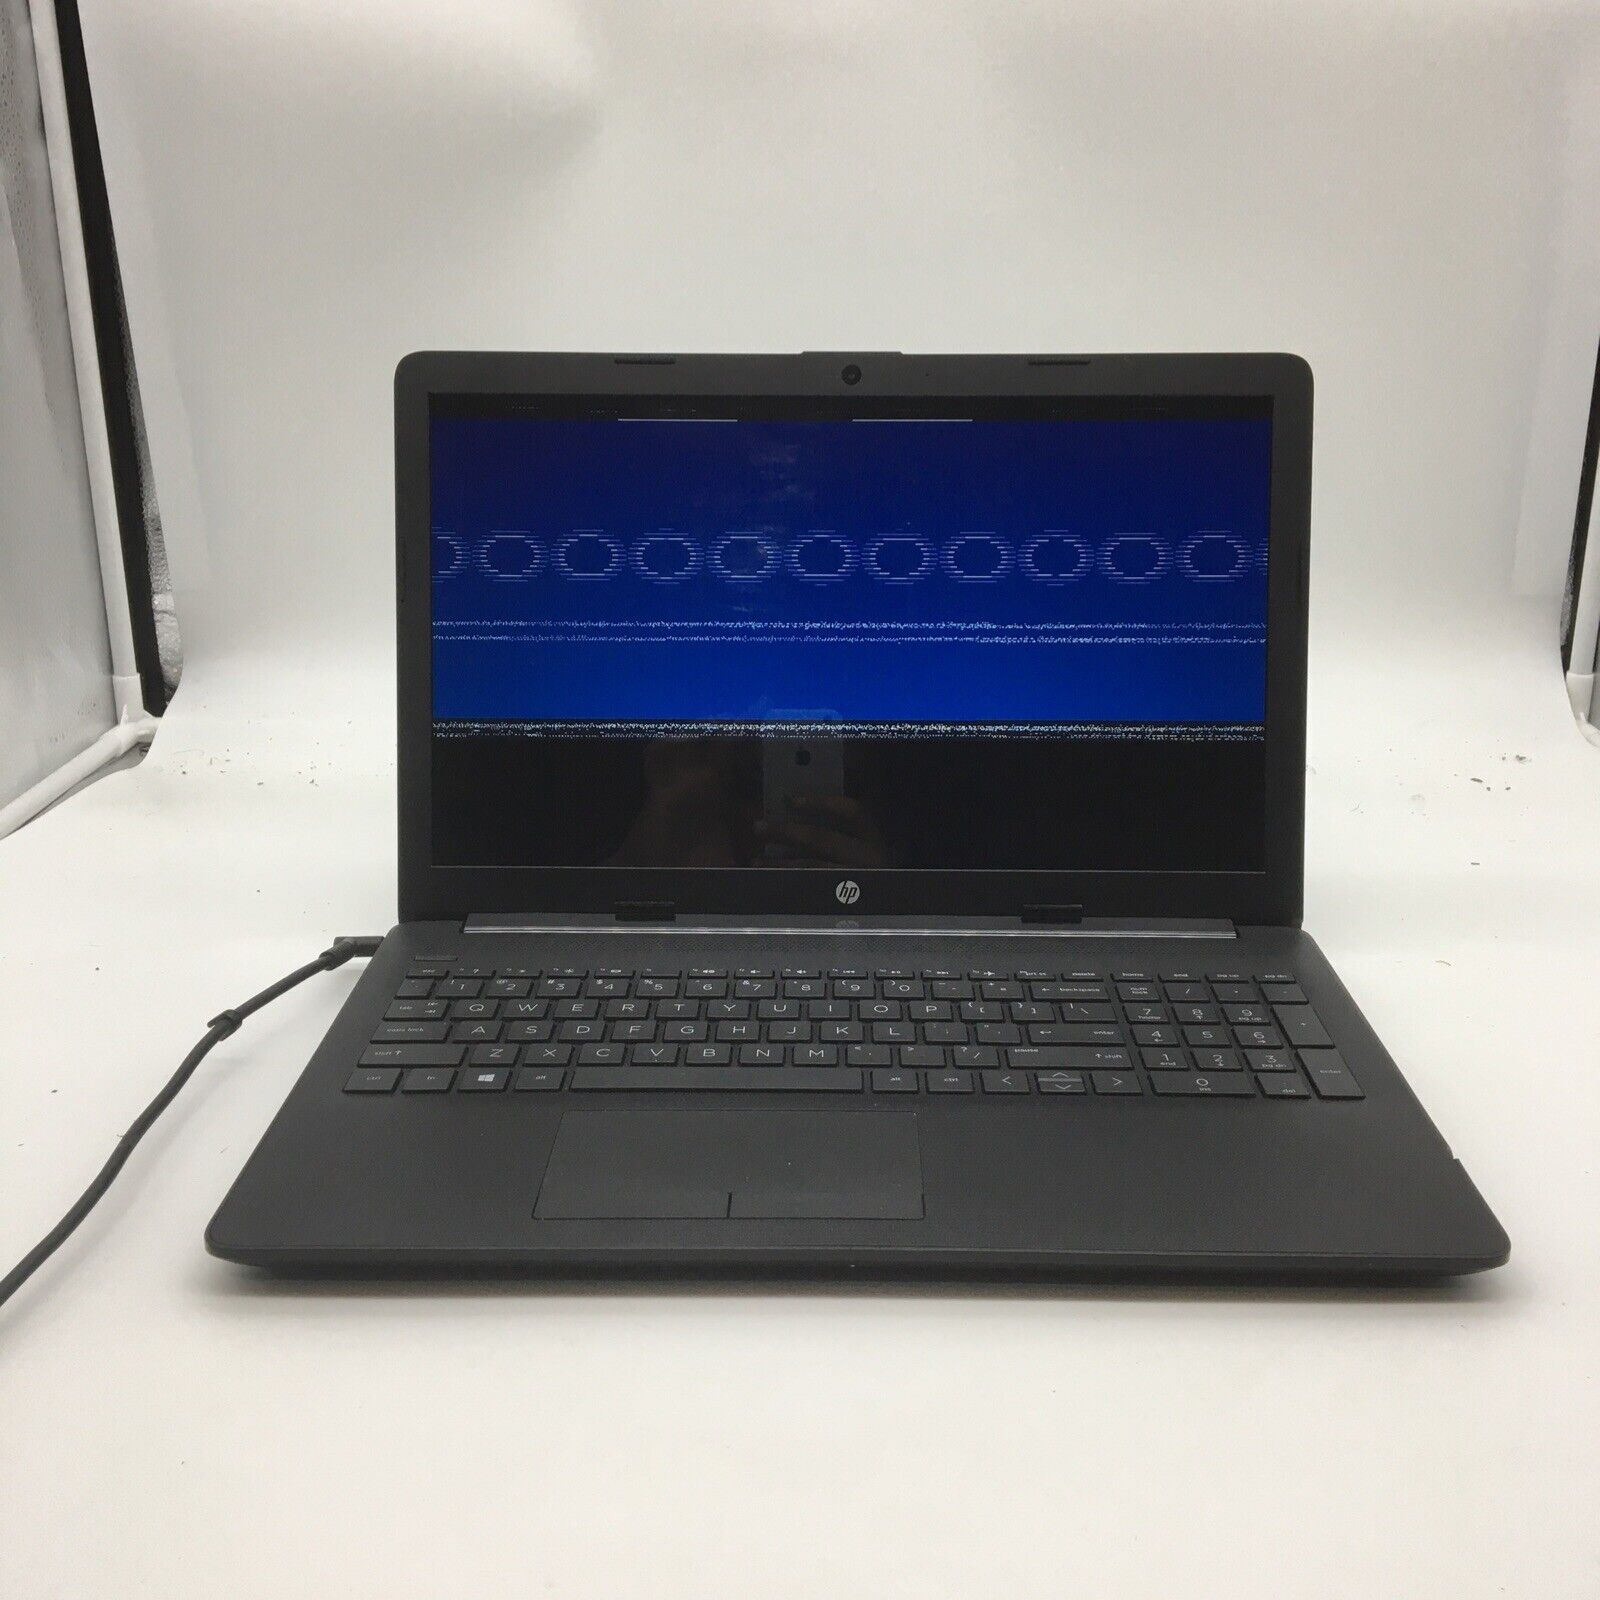 HP NoteBook 15-db0004dx Laptop AMD Ryzen 3 2200U 2.4GHz 8GB RAM 1TB HDD W10P